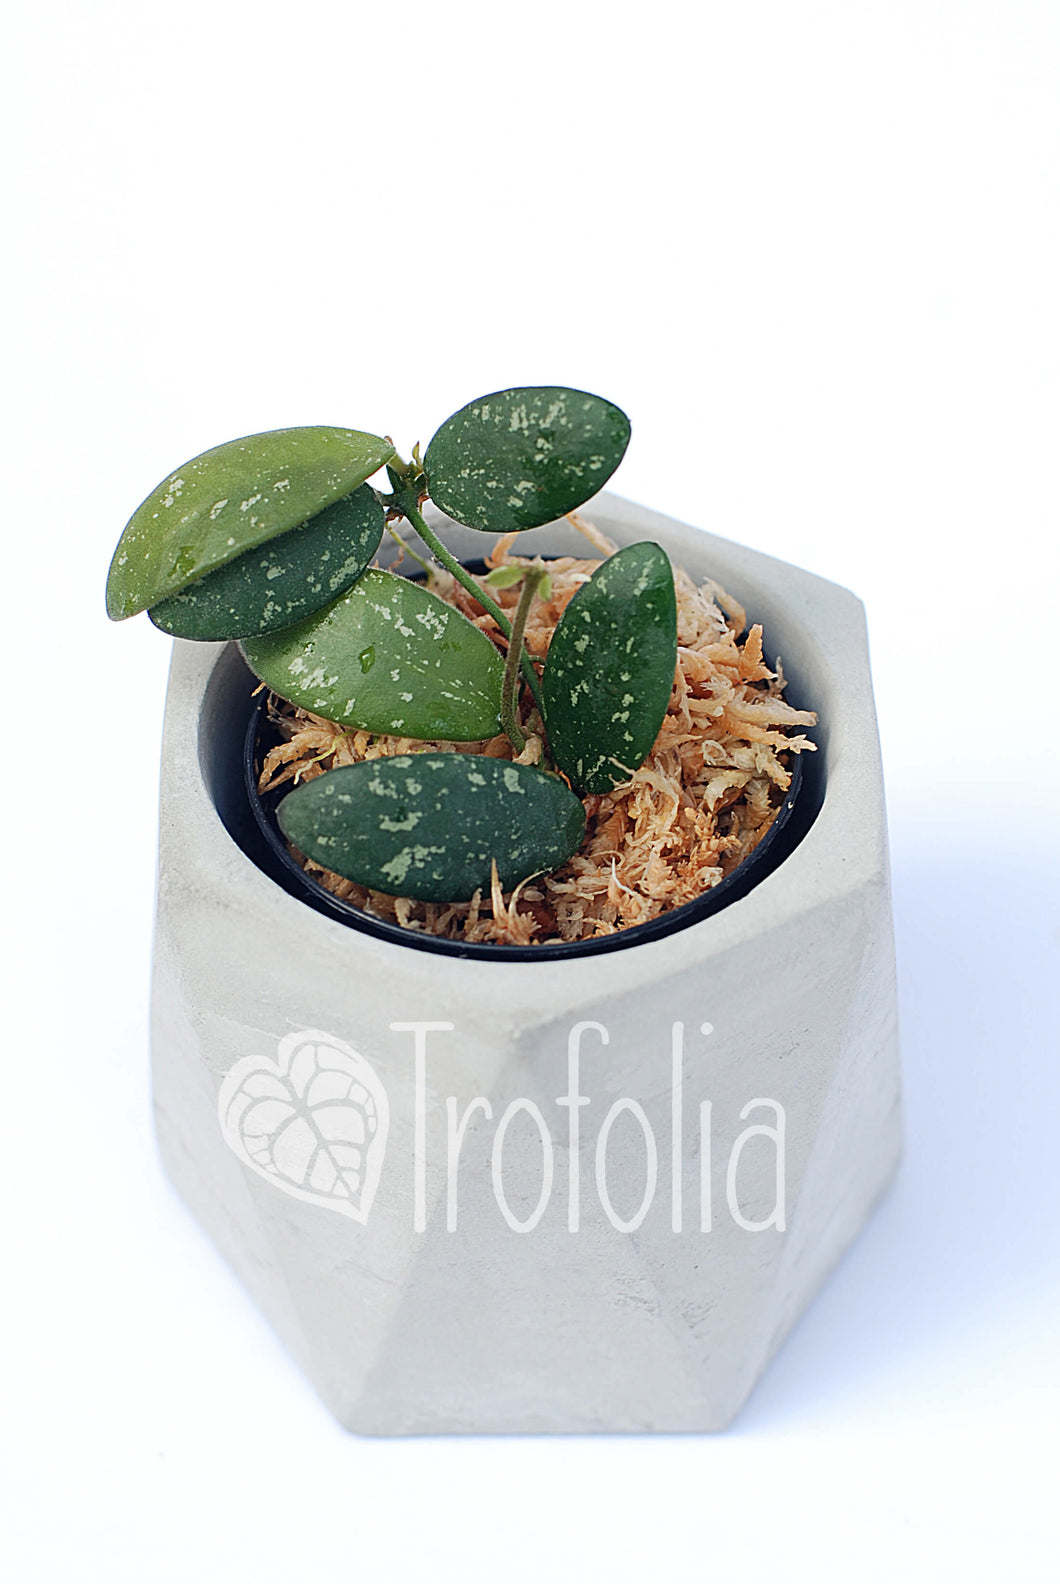 Hoya SP VL9 - Trofolia